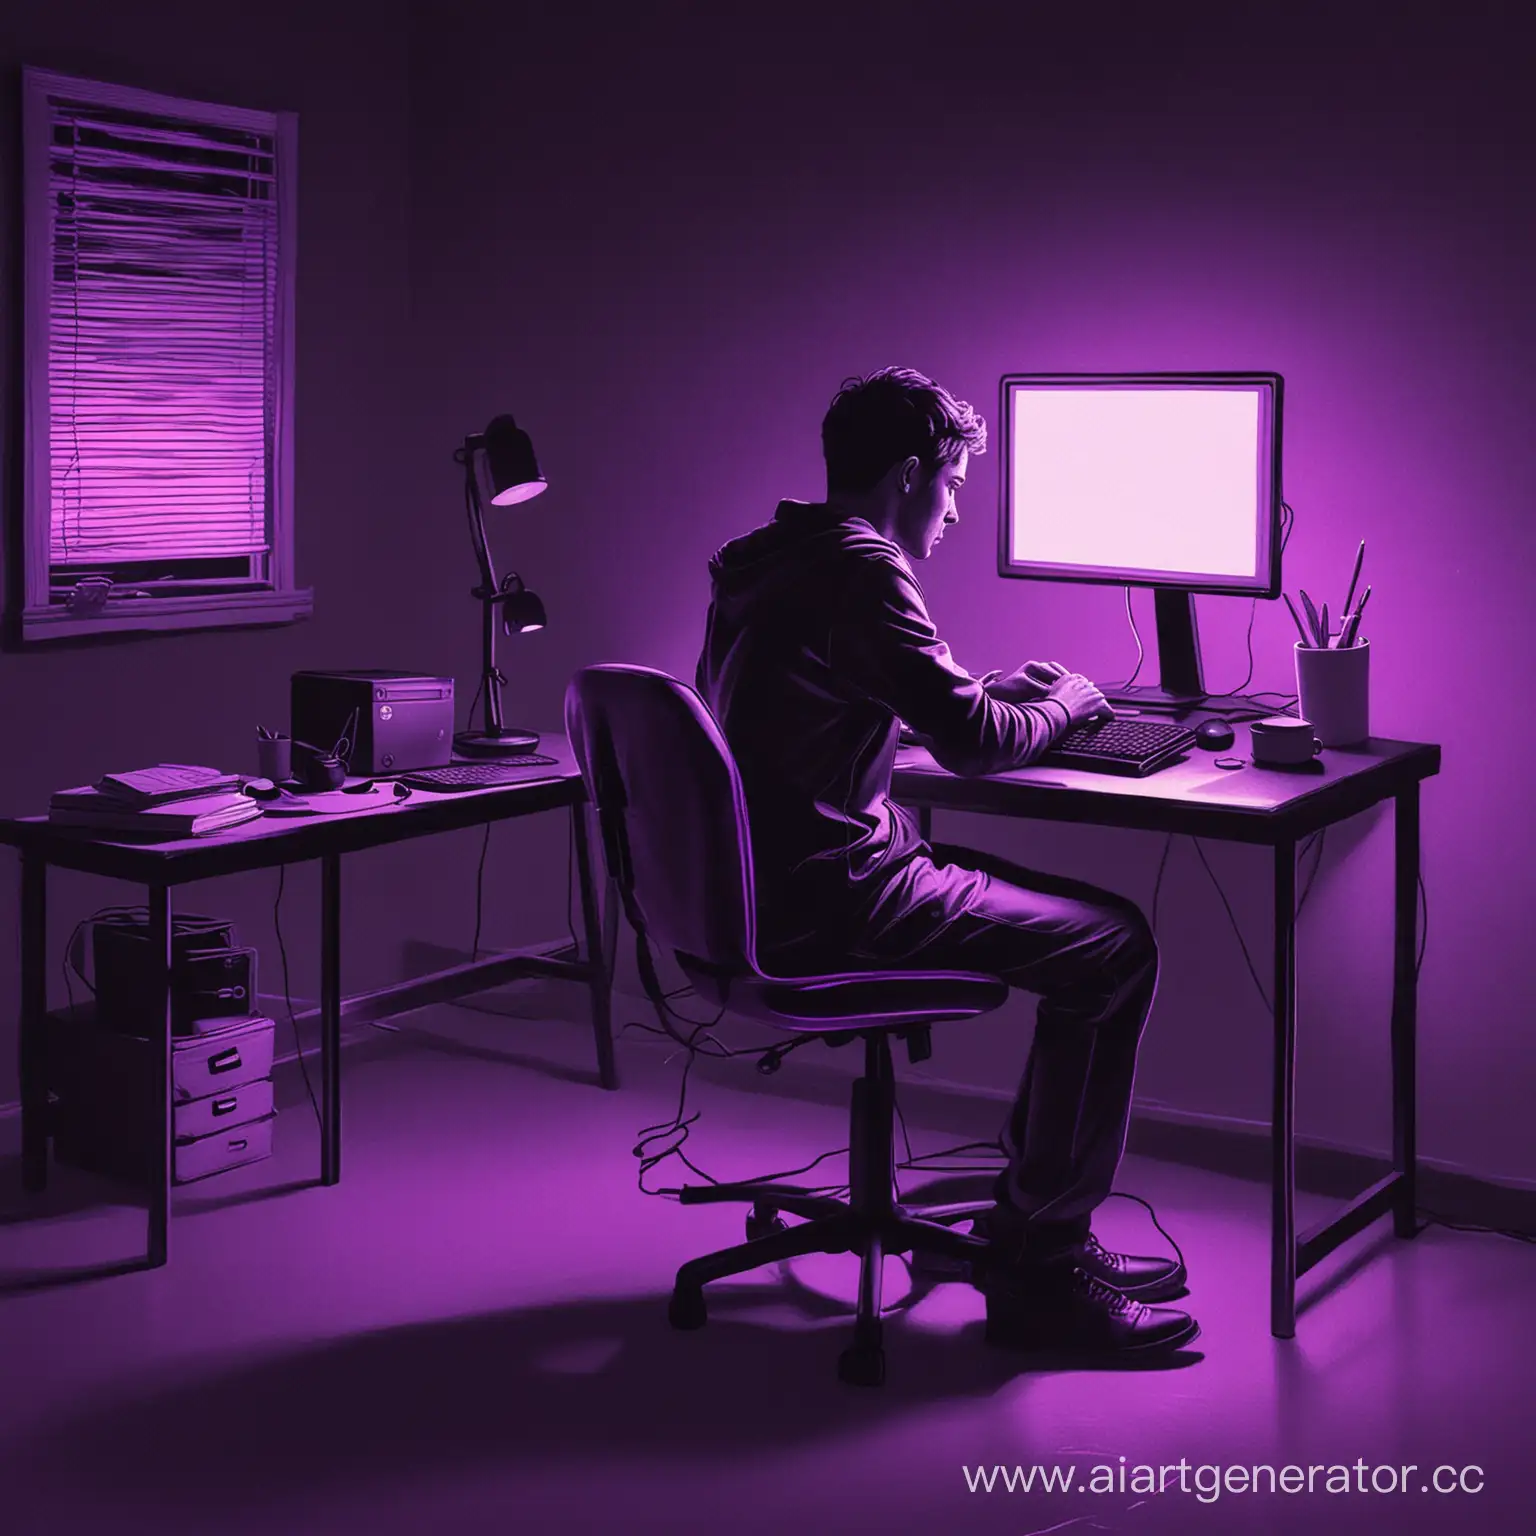 Нарисуй человека, сидящего за компьютером, который делает сайты ночью, и цвет его должен быть черный с неоновыми фиолетовыми лампами. 
